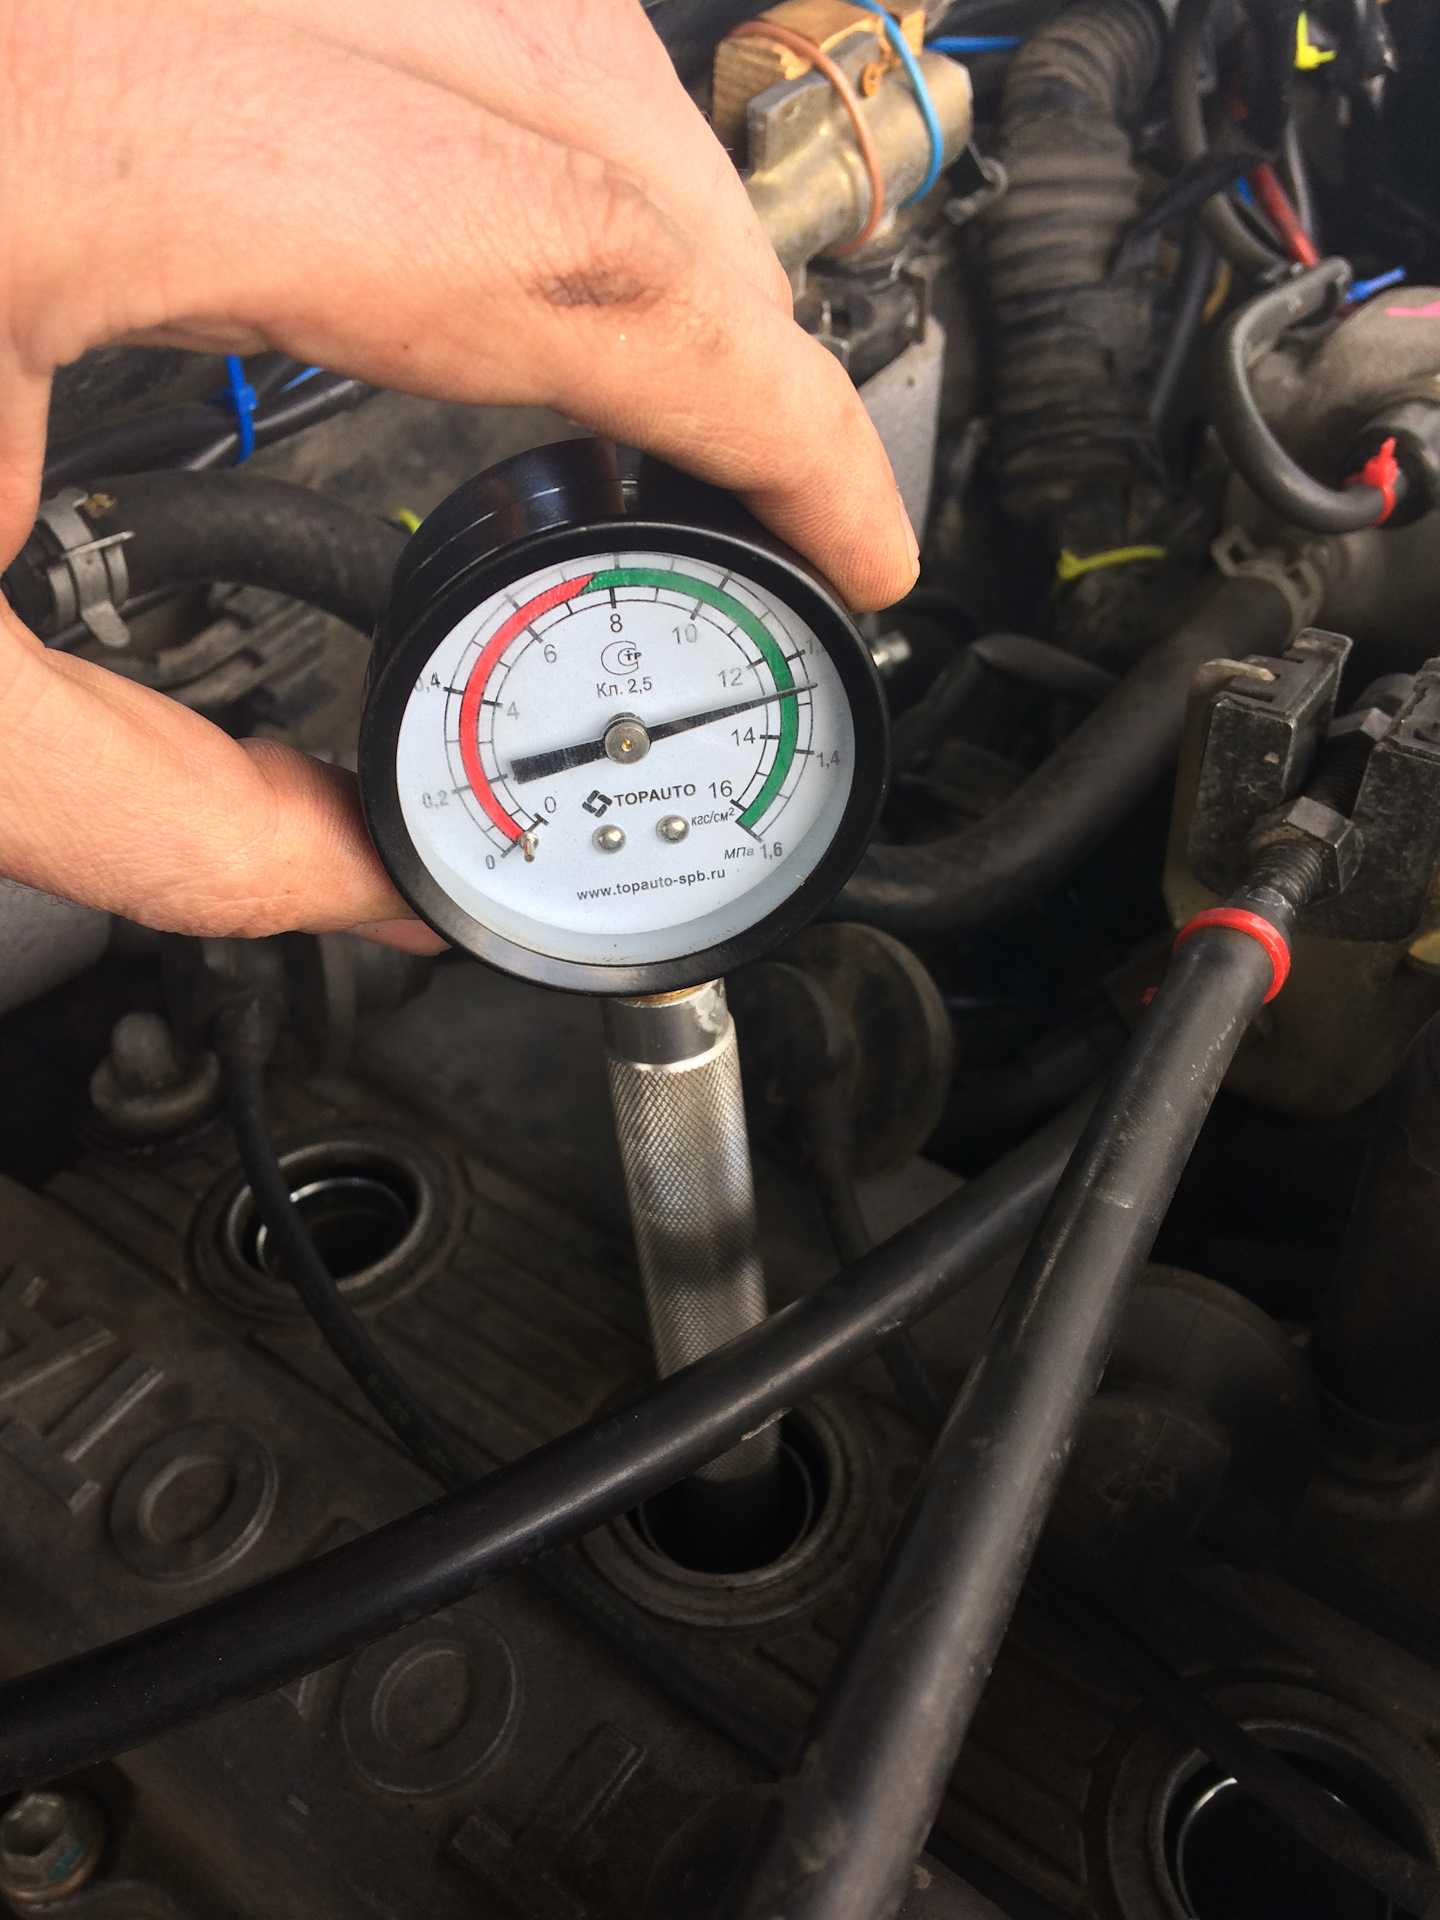 Проверка компрессии в цилиндрах двигателя - дизельного и бензинового